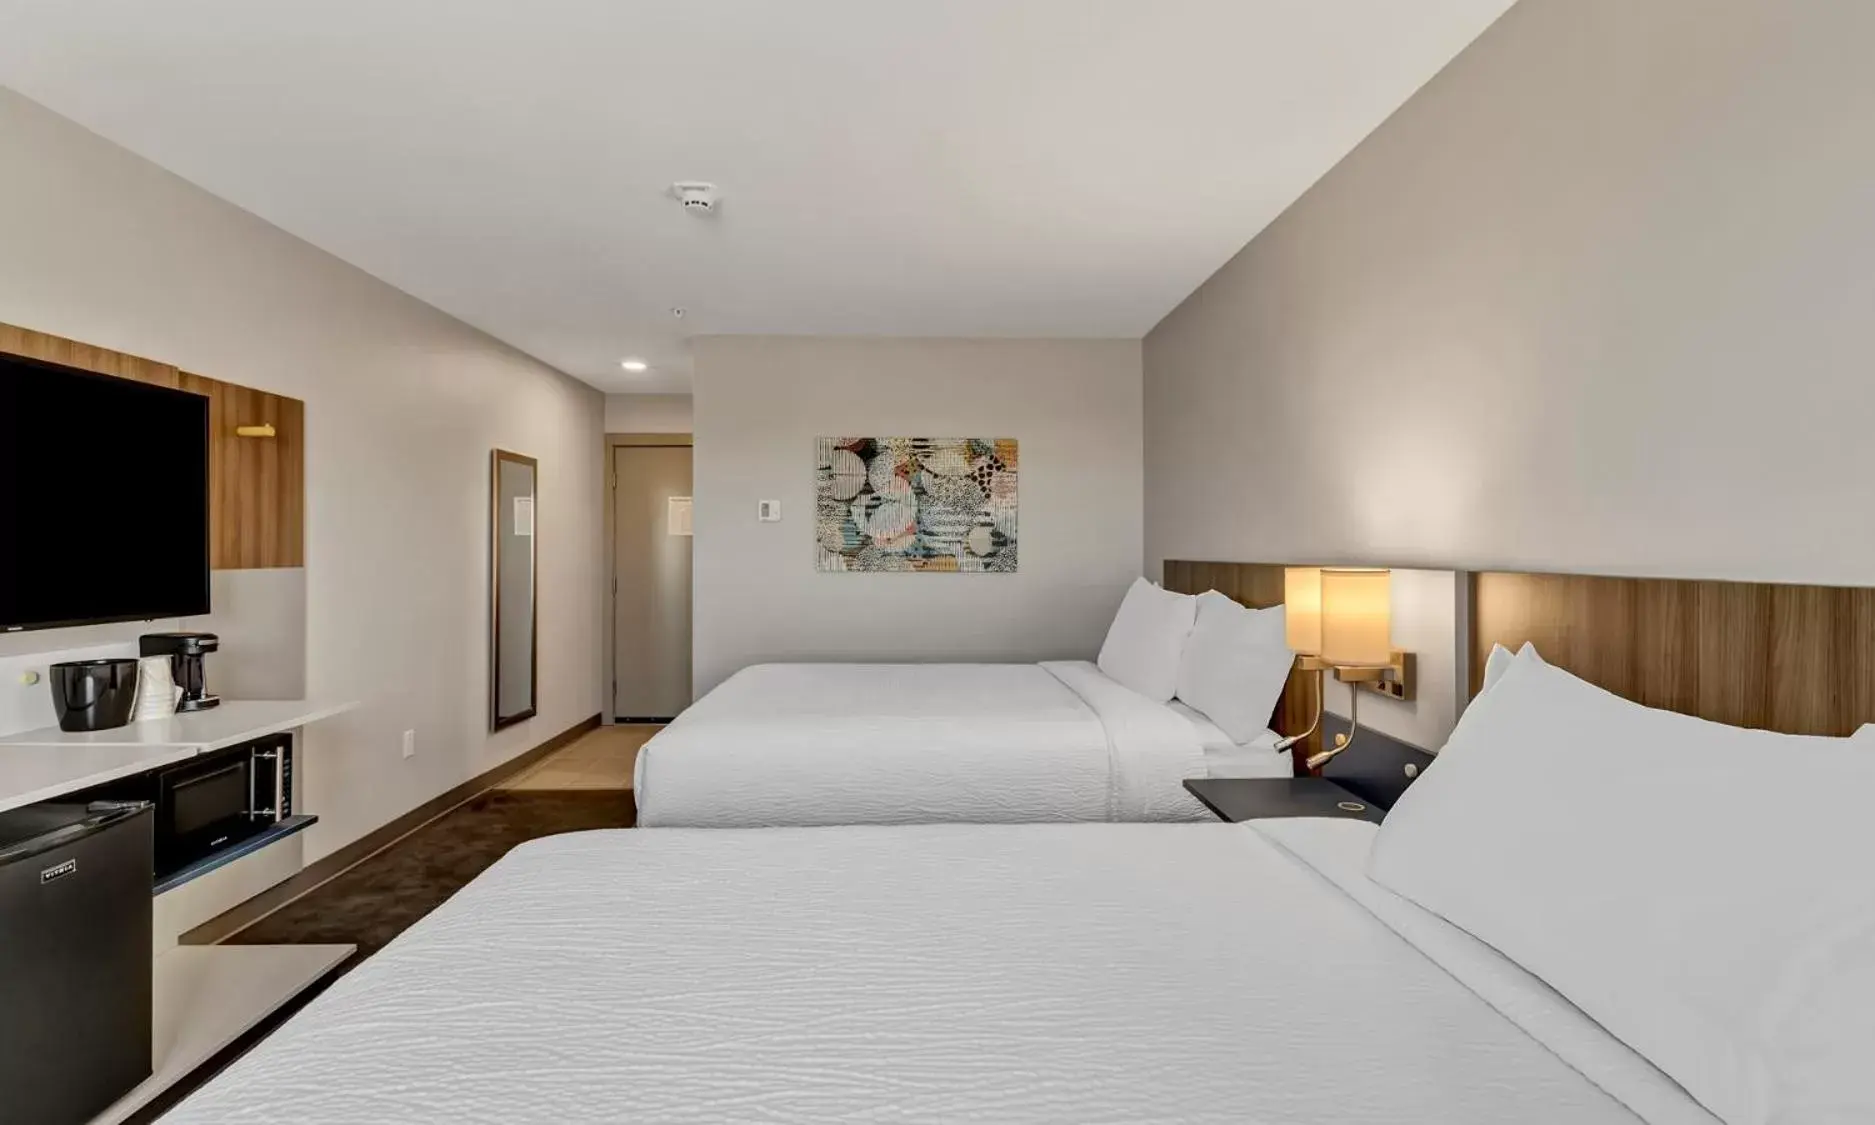 Bedroom, Bed in Microtel Inn & Suites by Wyndham George